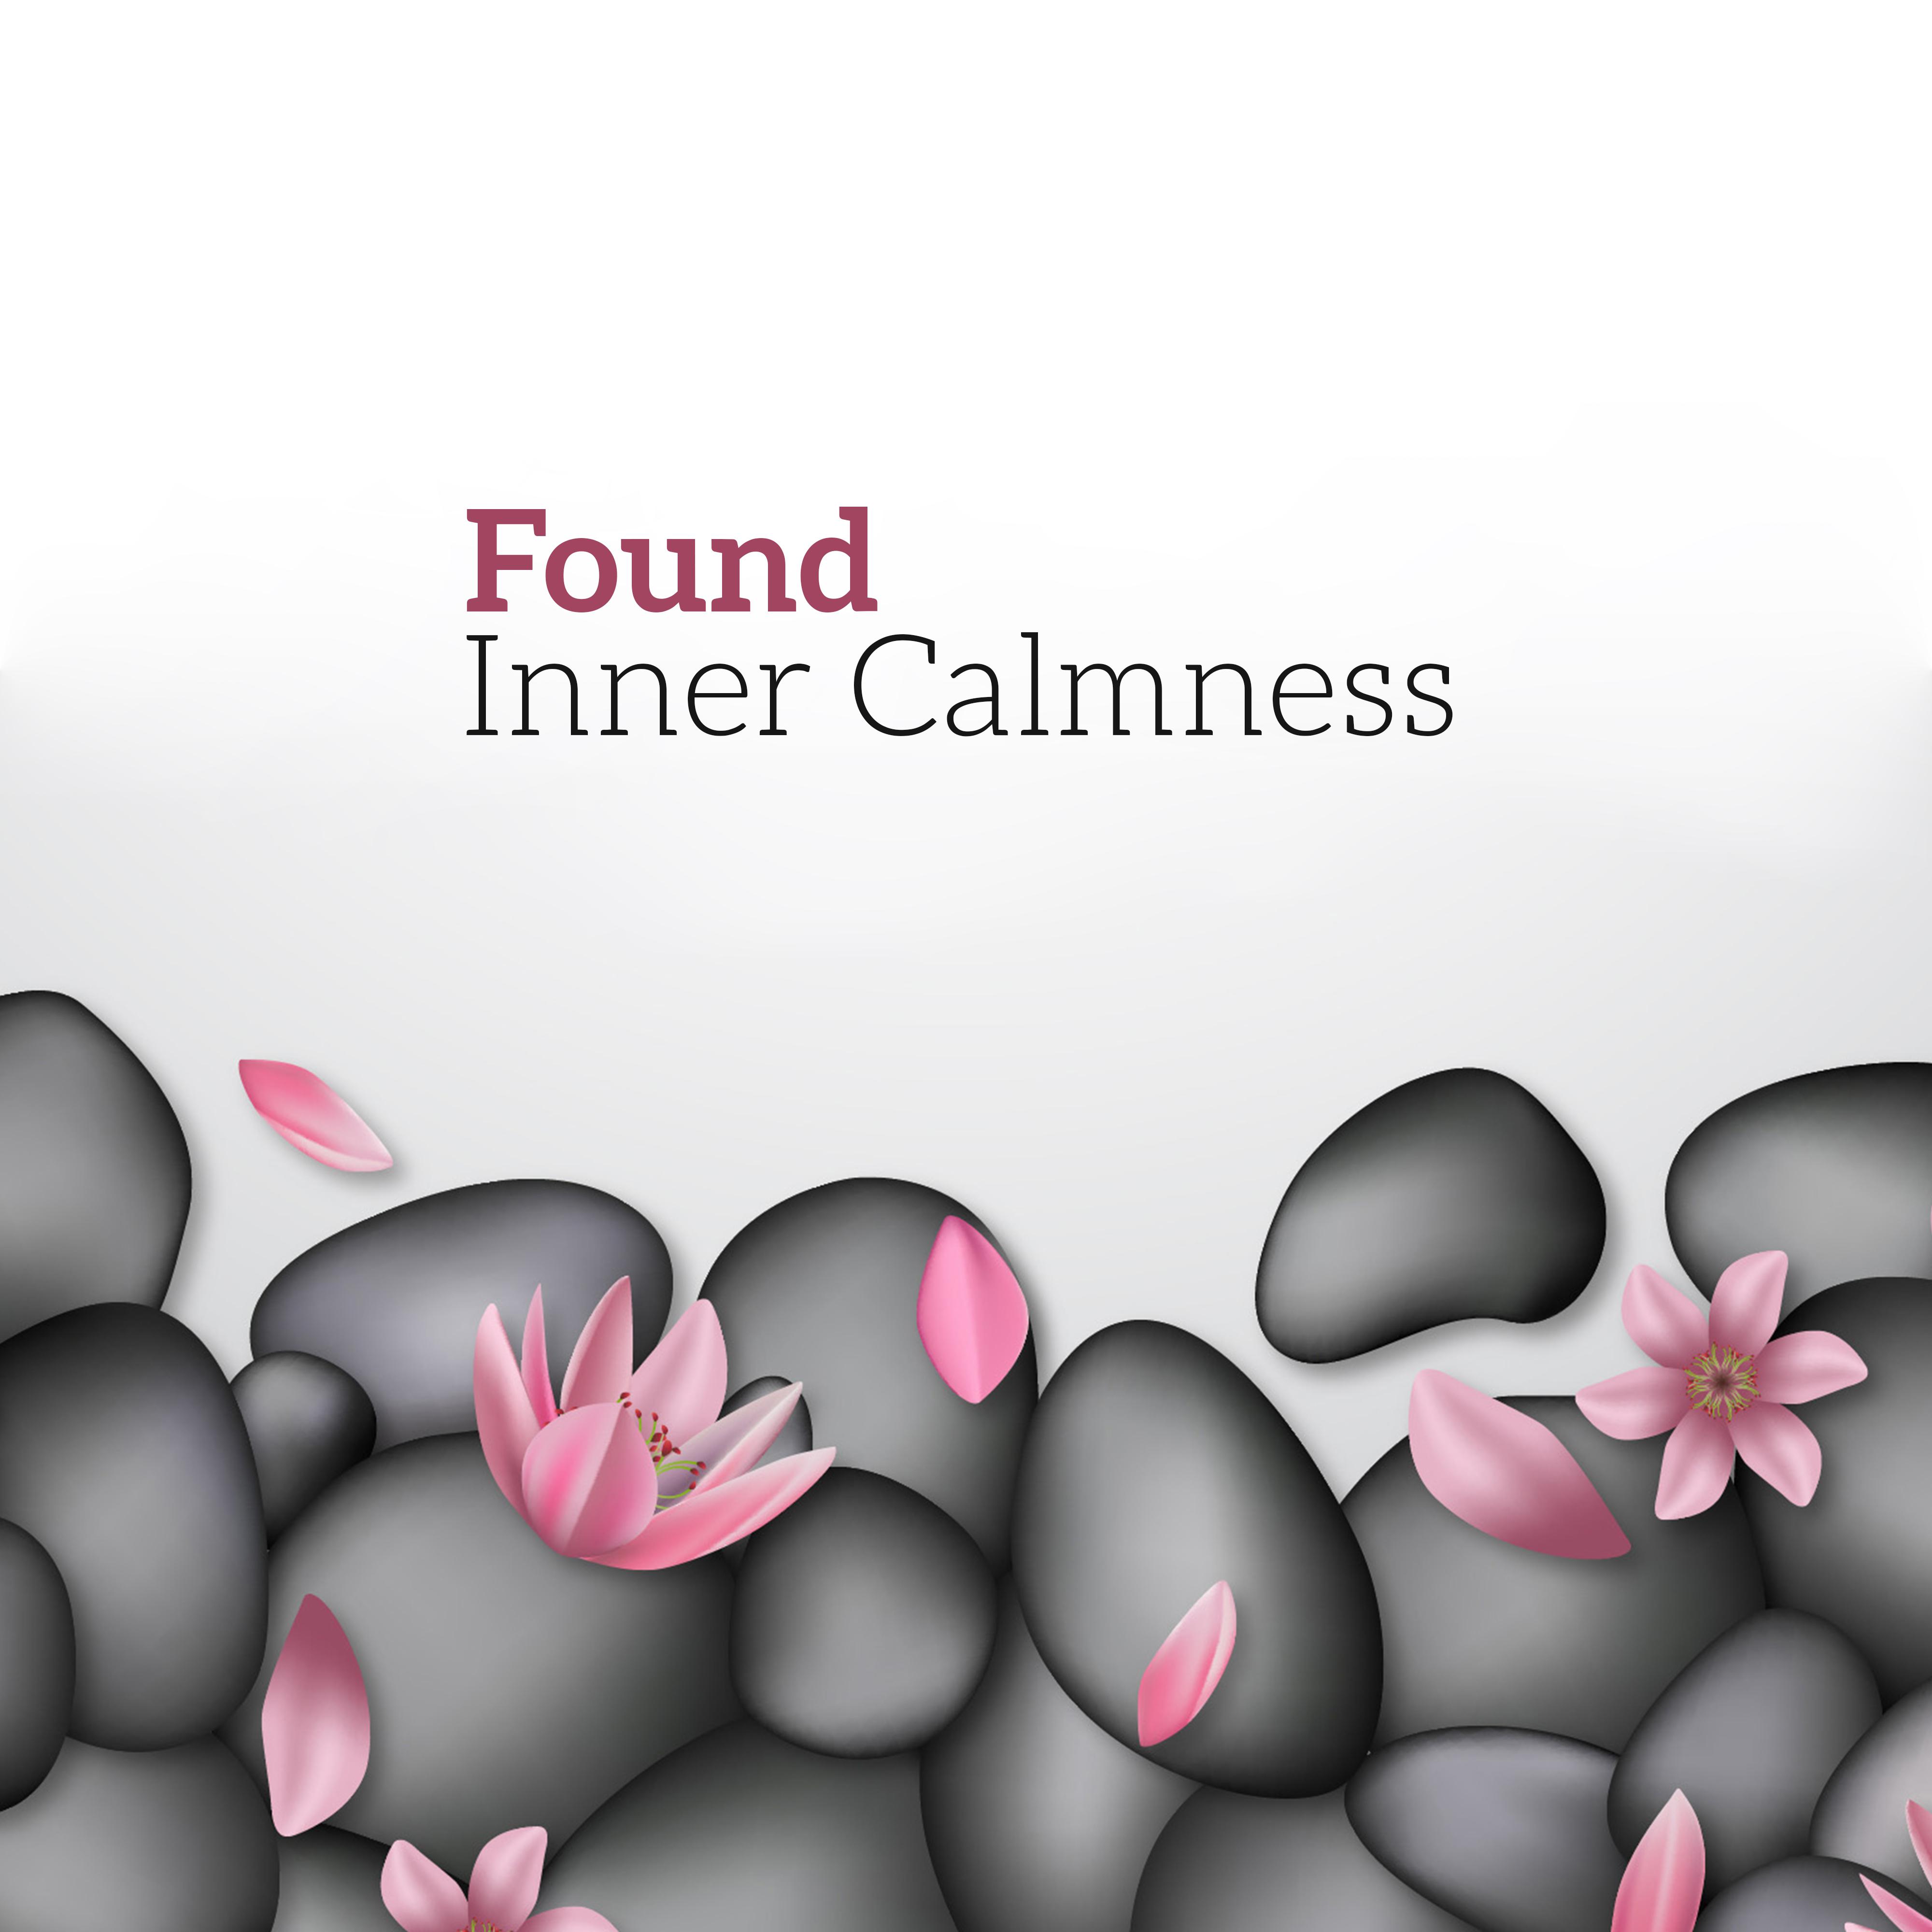 Found Inner Calmness